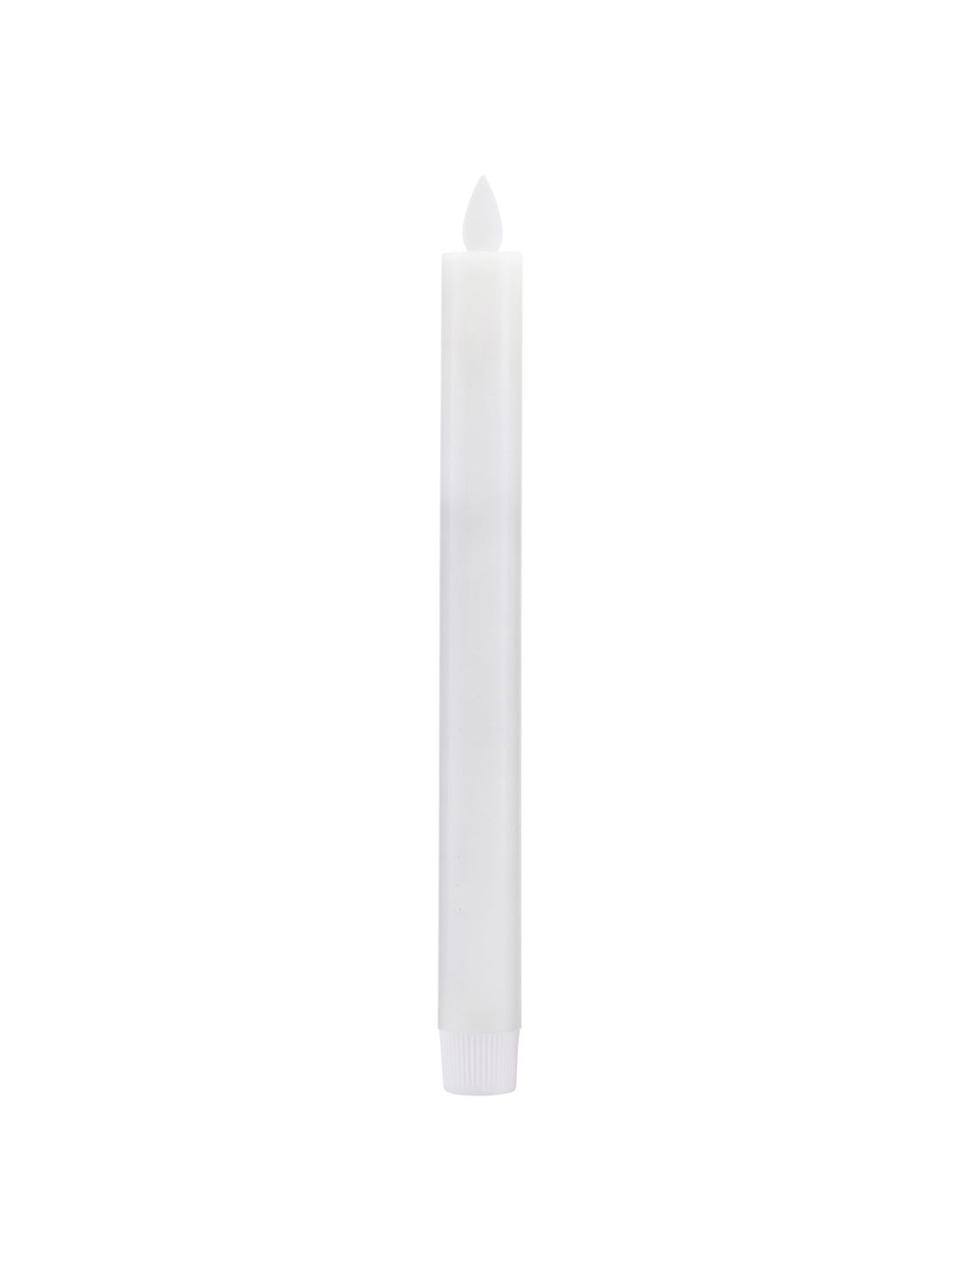 Velas pilar LED Ease, 2 uds., Blanco, Ø 2 x Al 24 cm